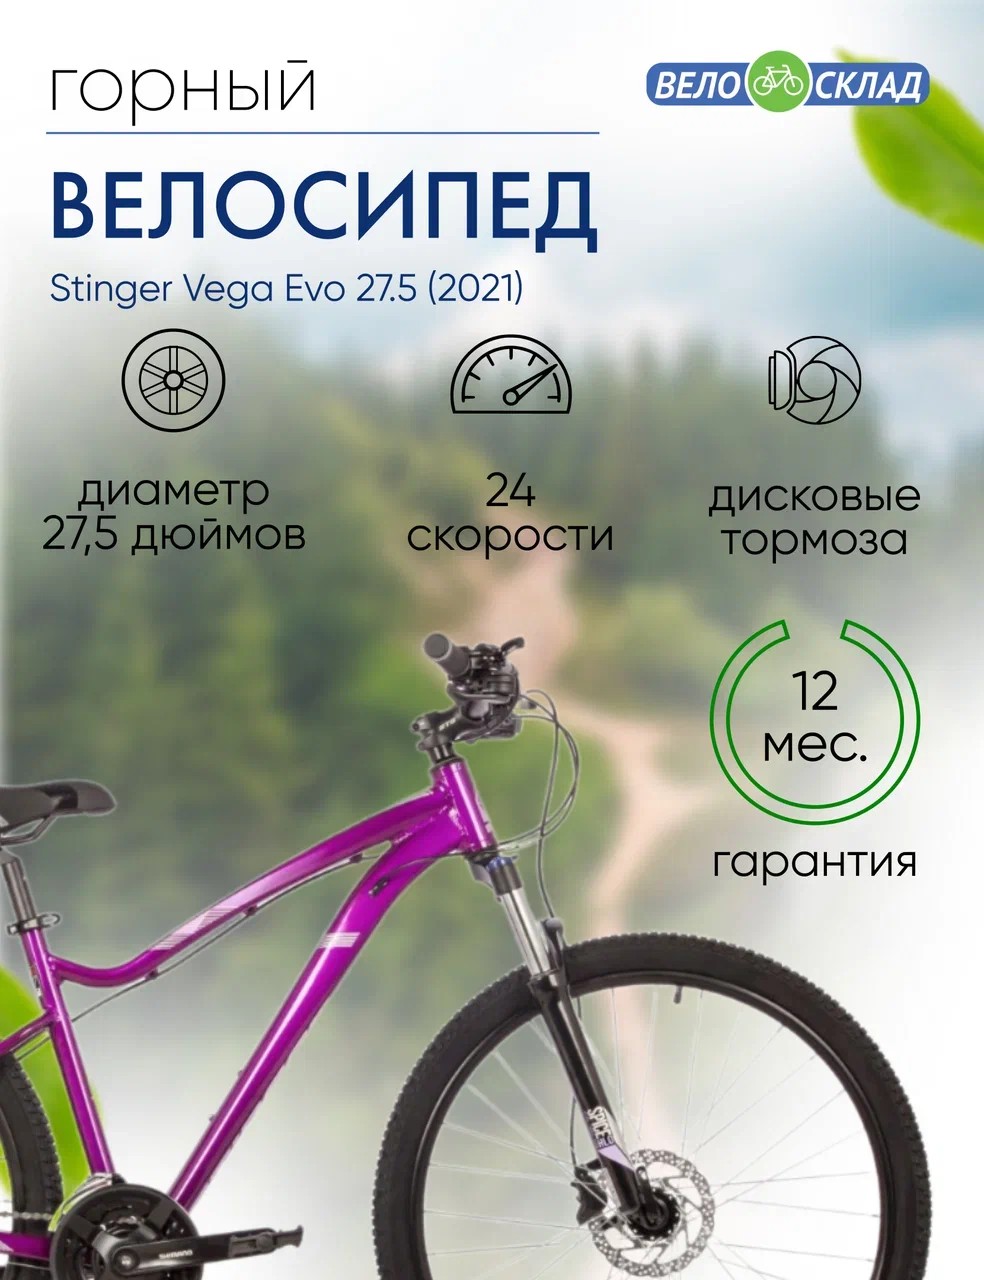 Женский велосипед Stinger Vega Evo 27.5, год 2021, цвет Фиолетовый, ростовка 15